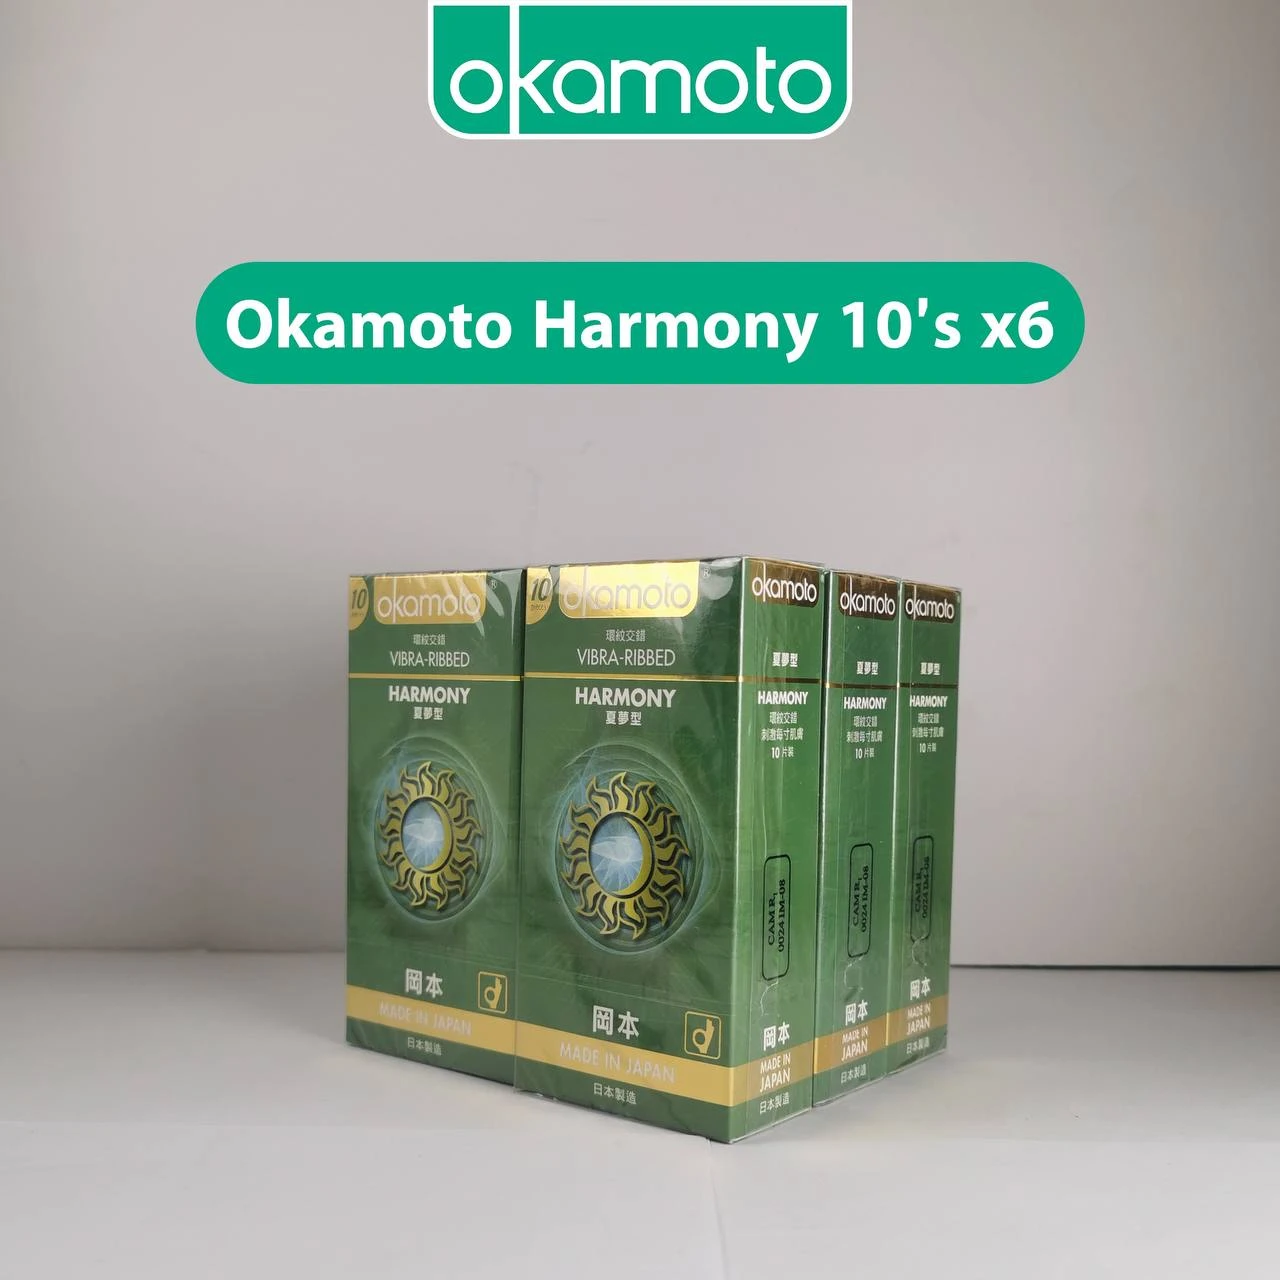 ស្រោមអនាម័យអូកាម៉ូតុ Harmony 10’s